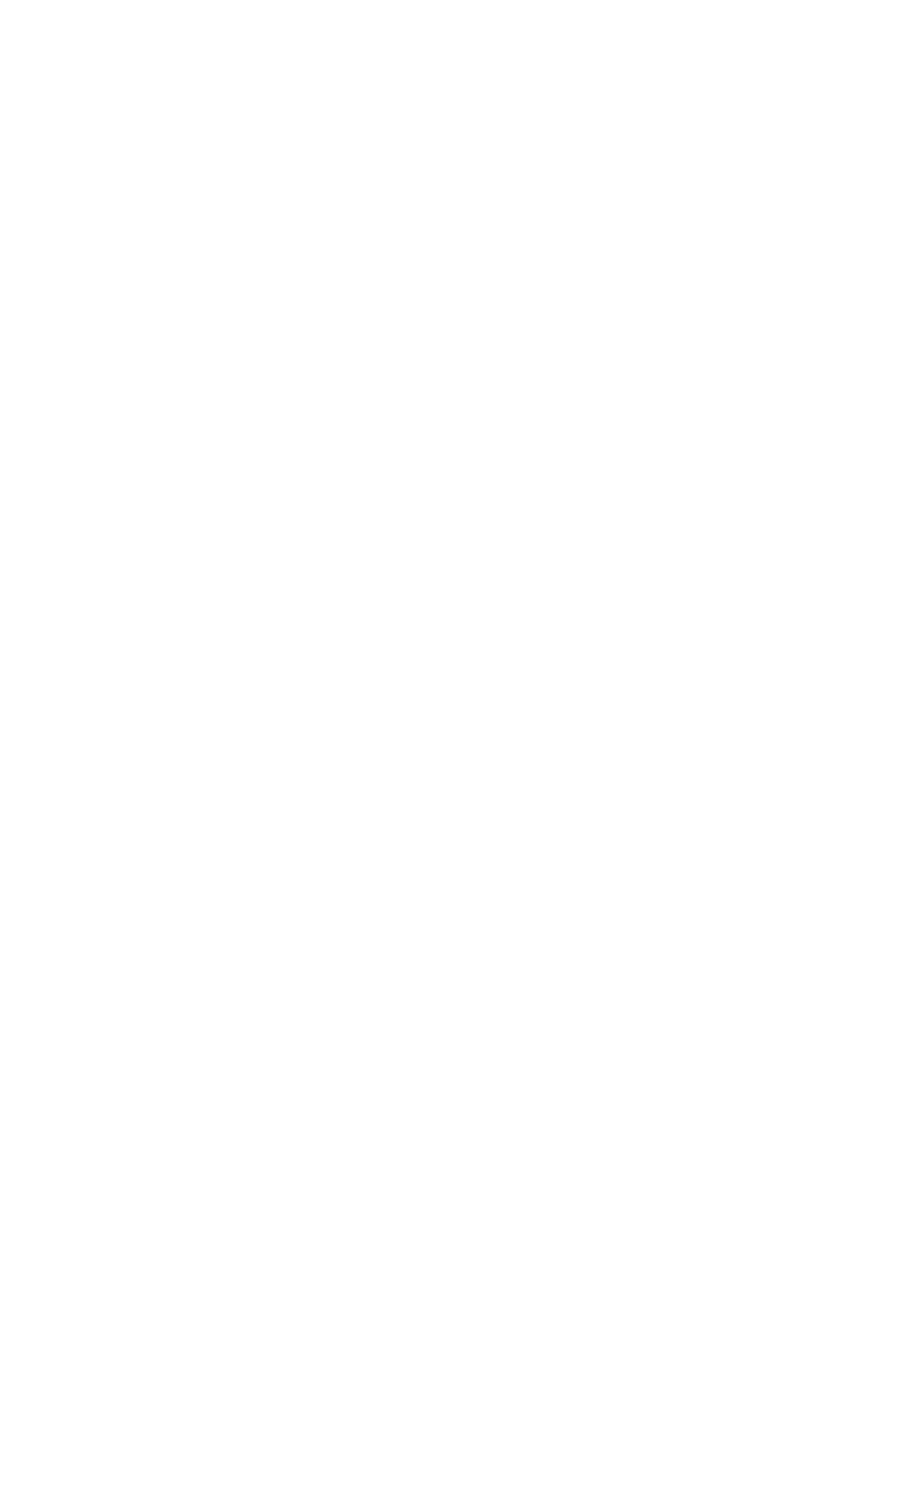 SBDT